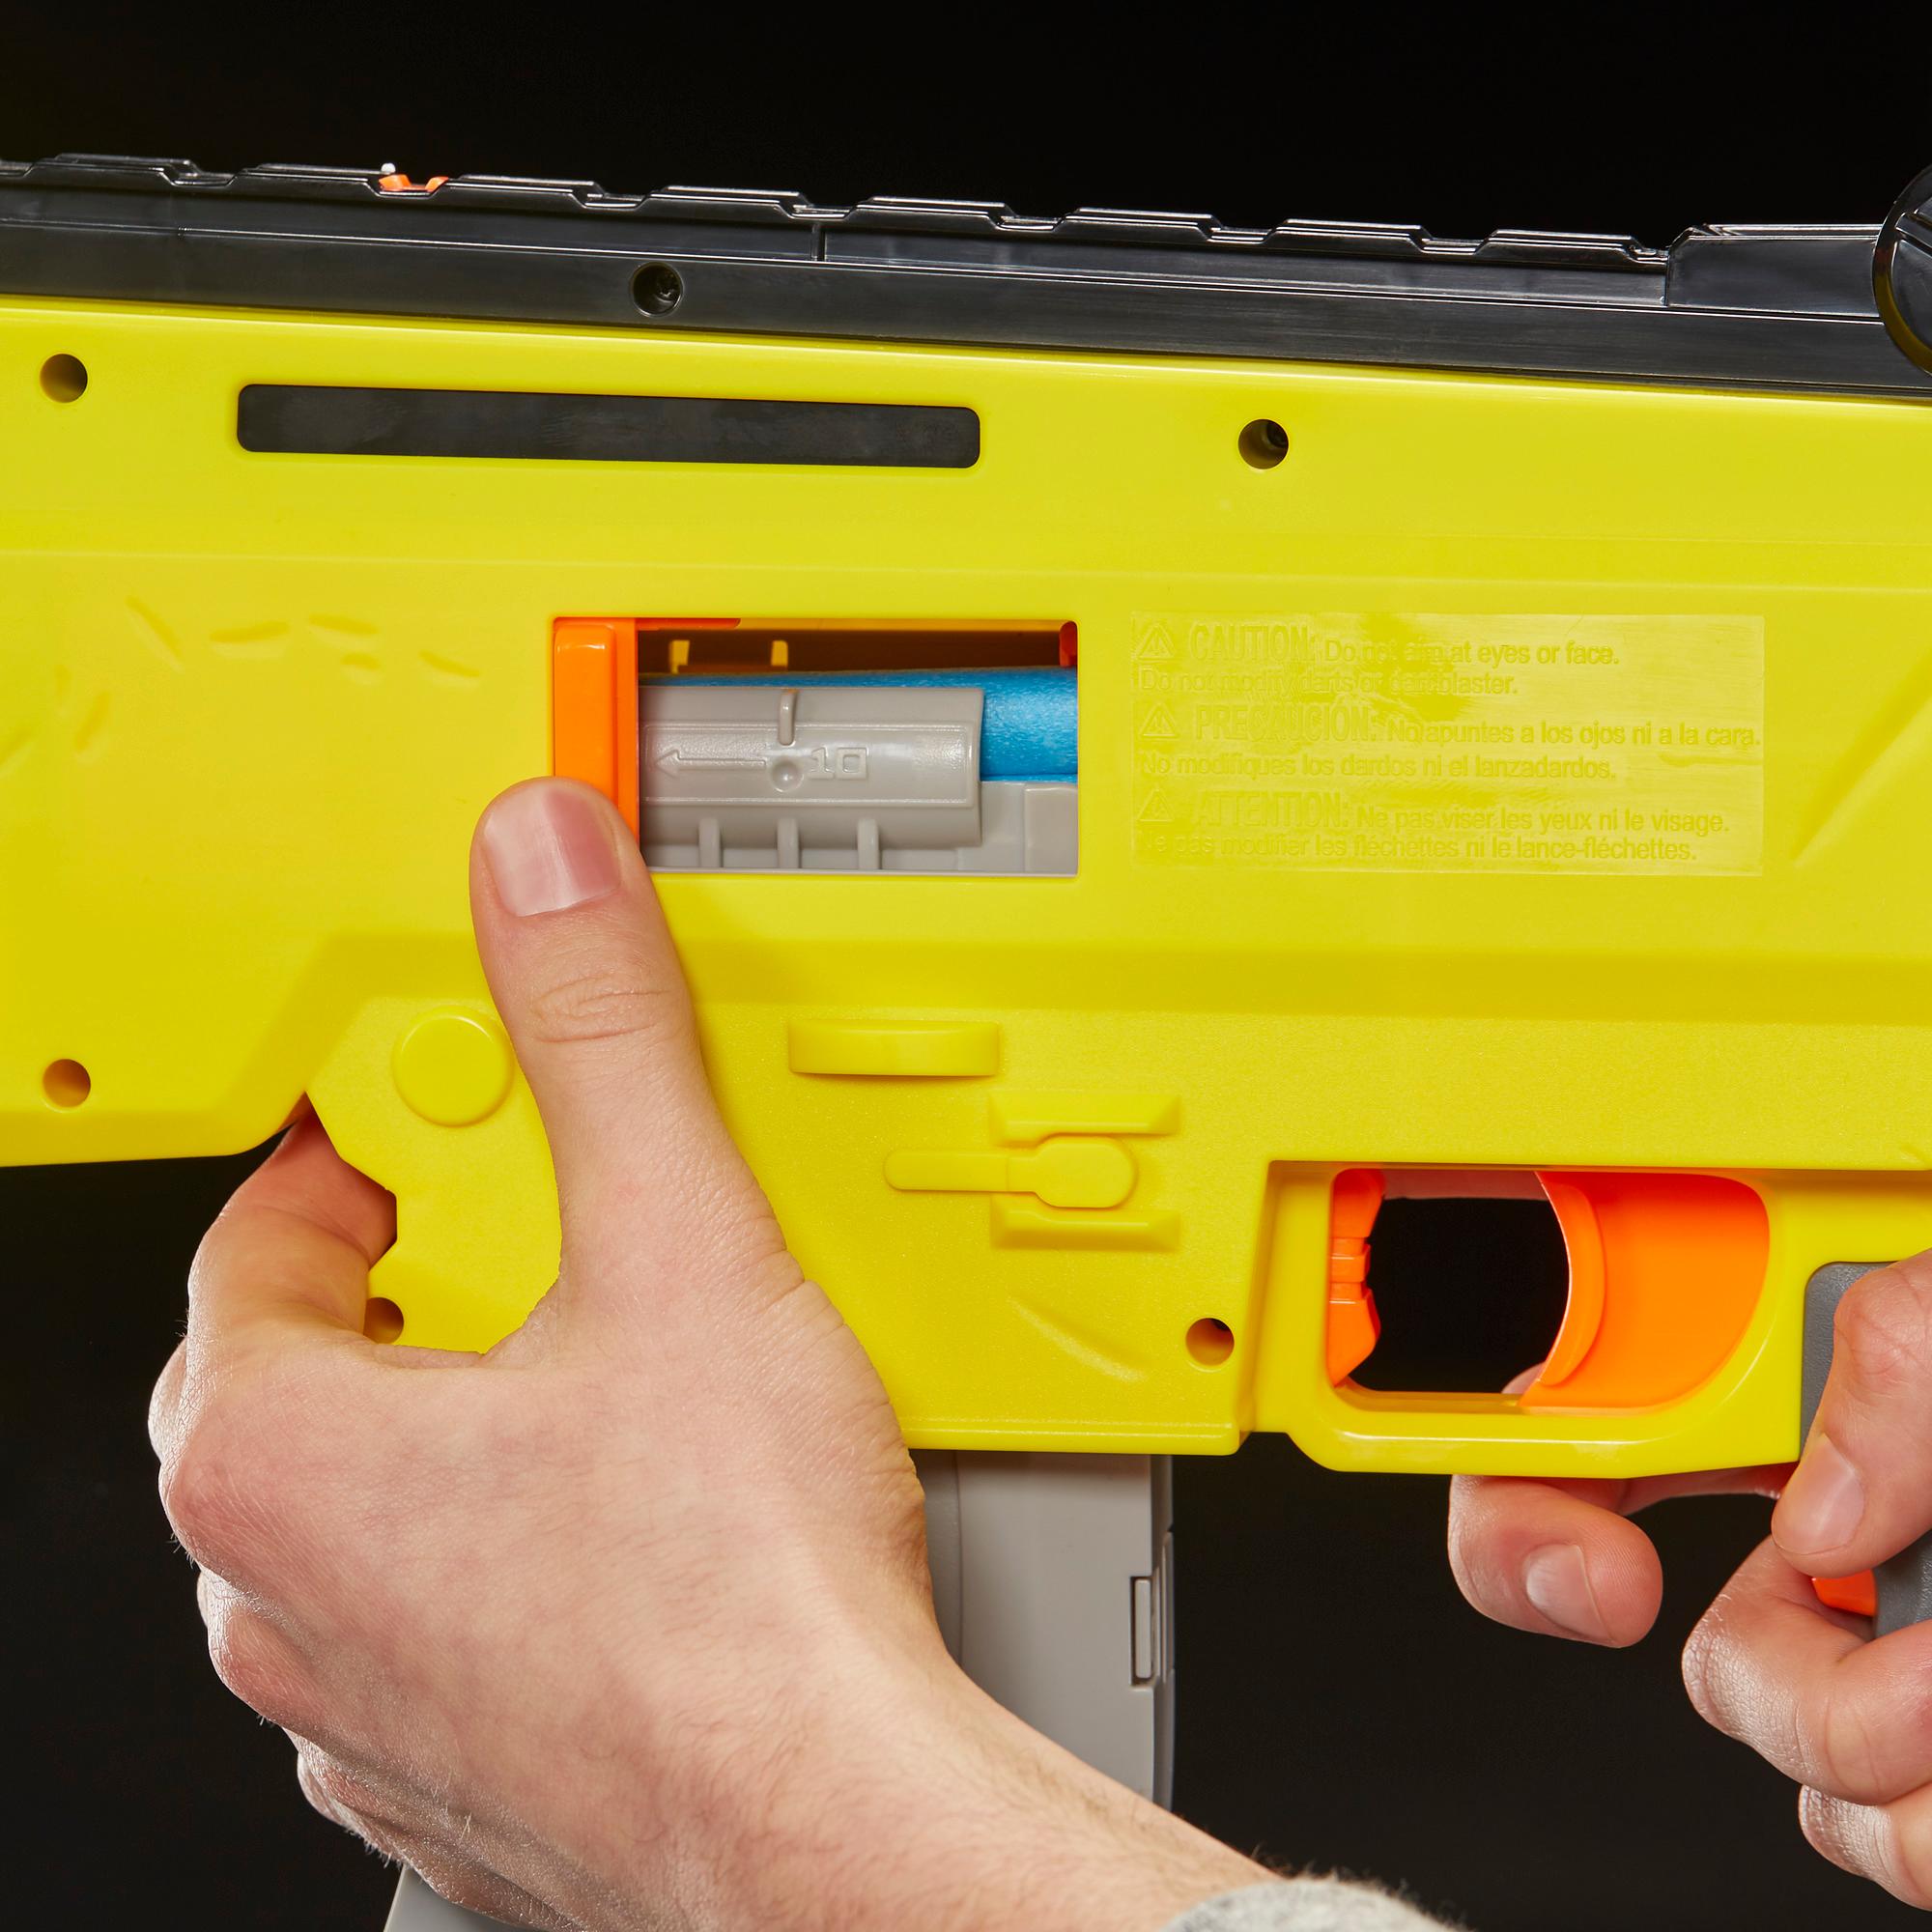 Nerf's first 'Fortnite'-inspired gun is the AR-L Blaster